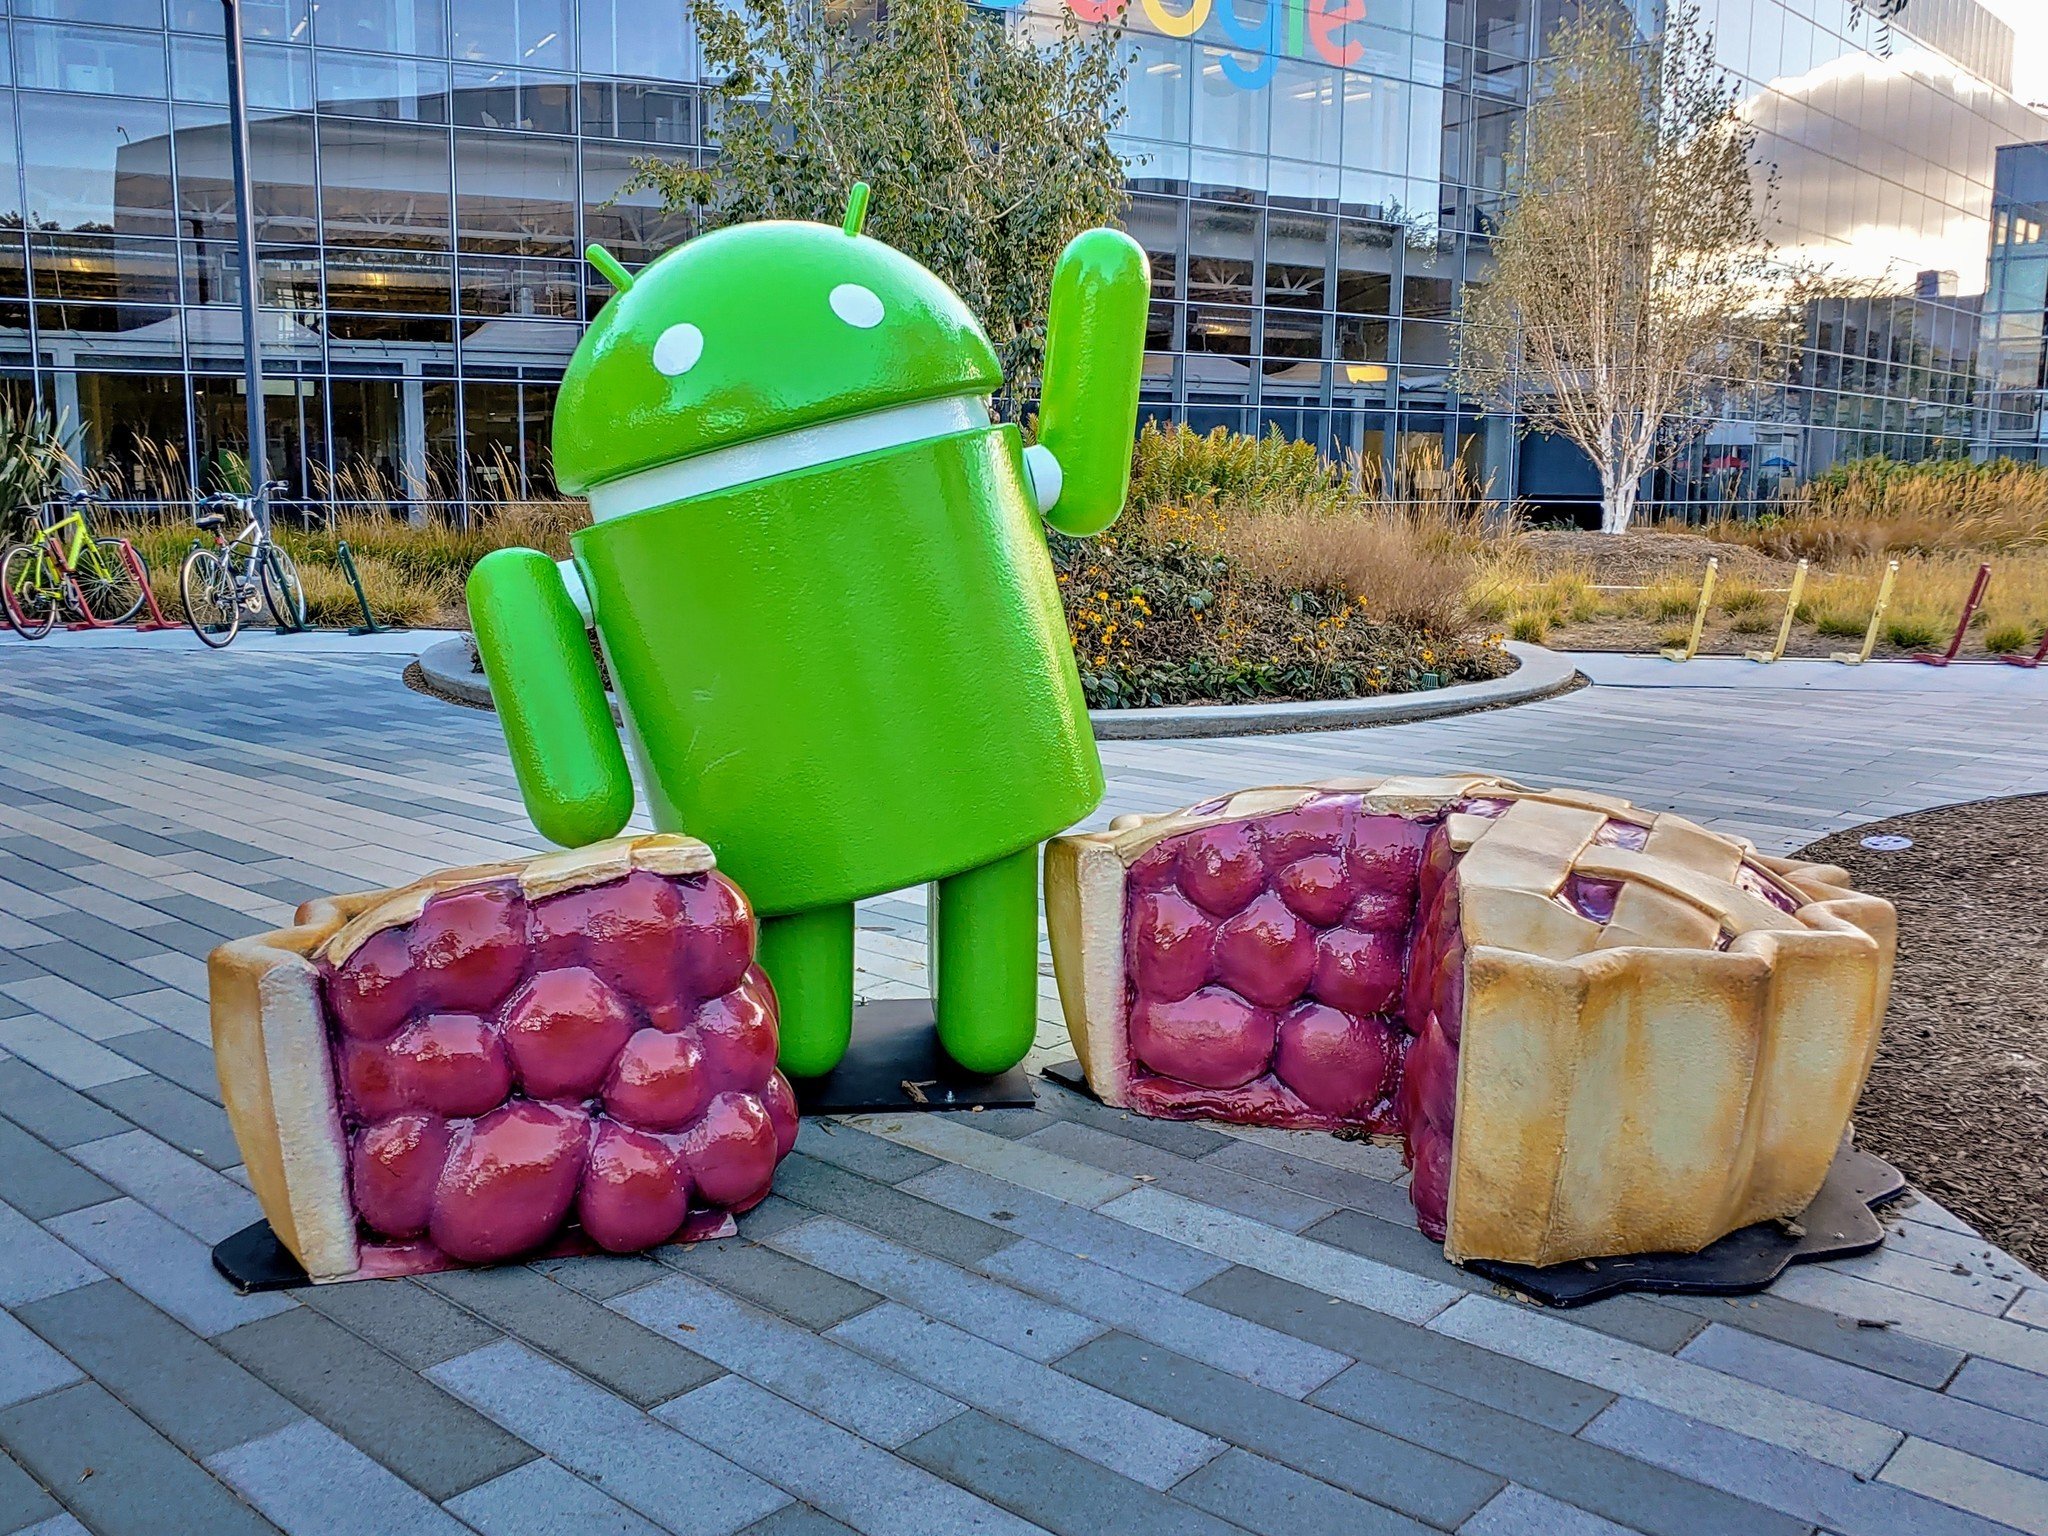 همه چیزهایی که باید از بروزرسانی Samsung One UI و Android 9 Pie بدانید